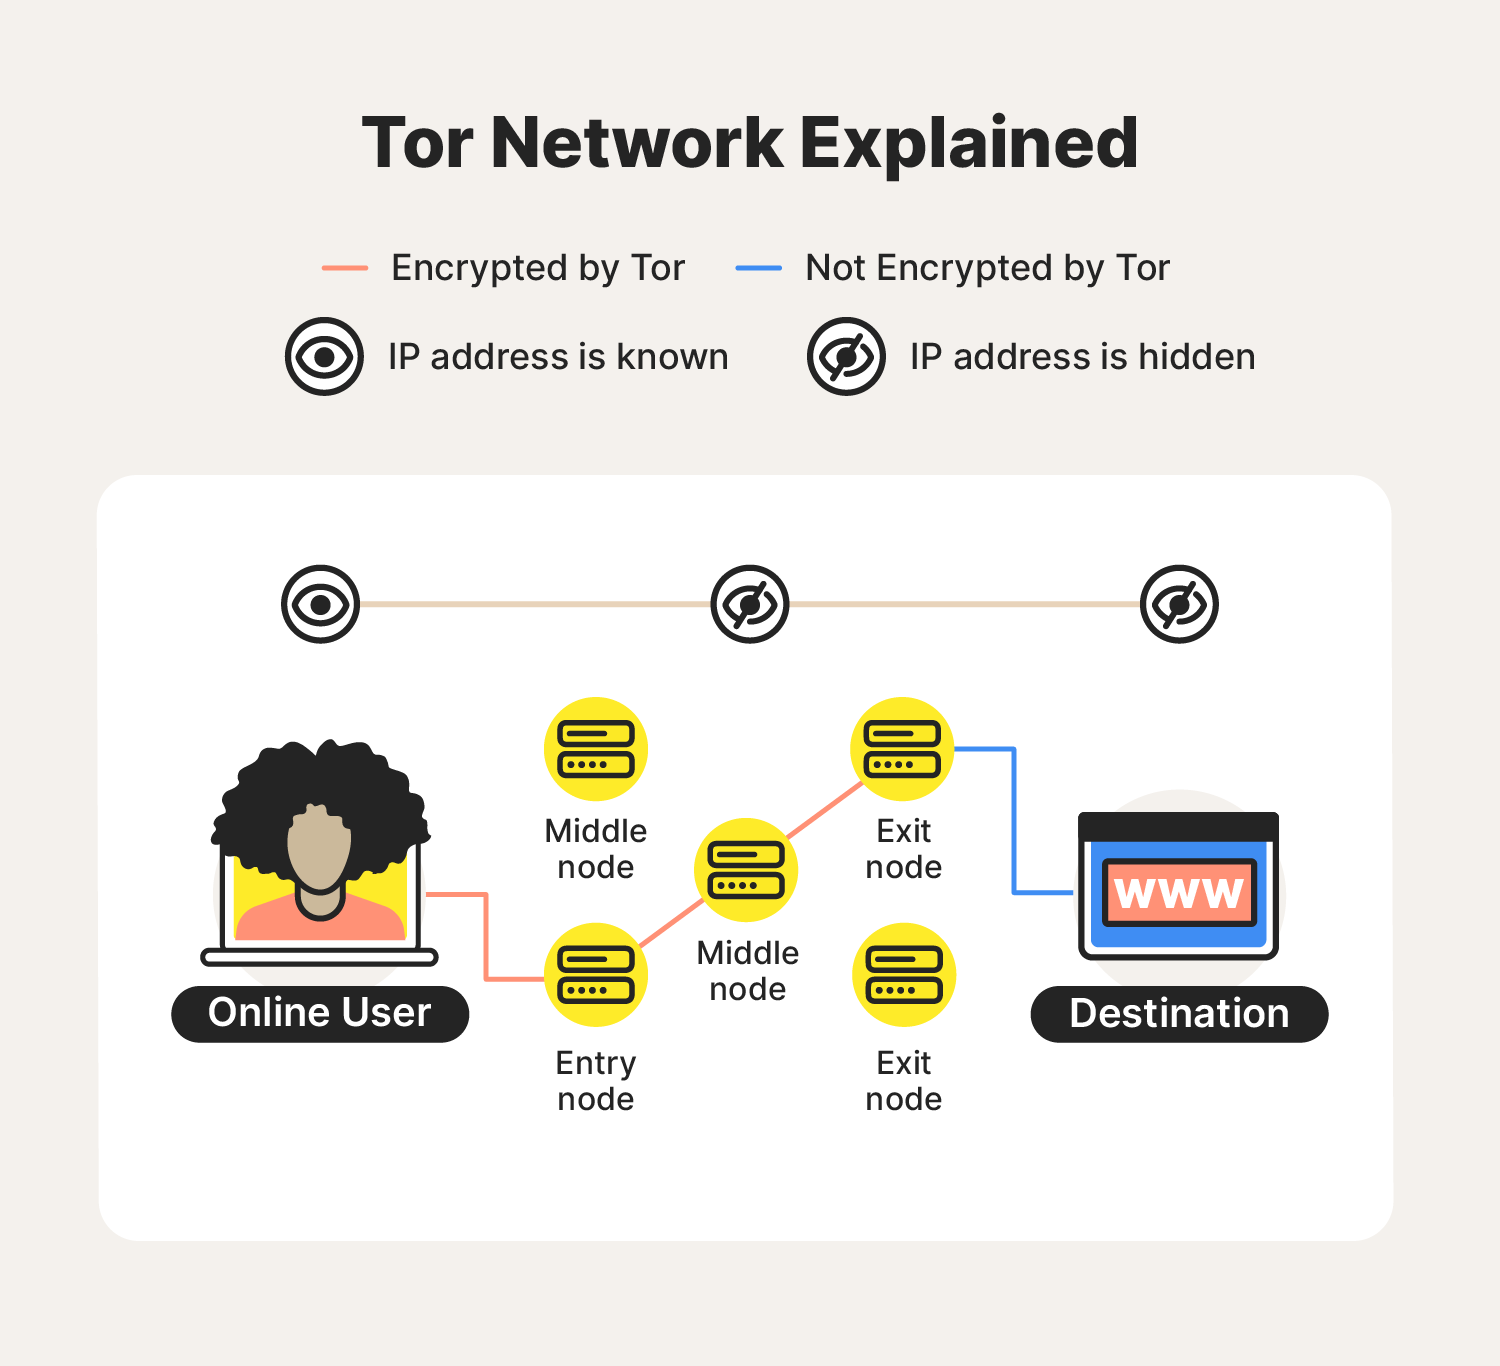 يشرح الرسم كيفية عمل شبكة TOR ، مع تسليط الضوء على اختلاف رئيسي بين شبكات TOR مقابل VPN